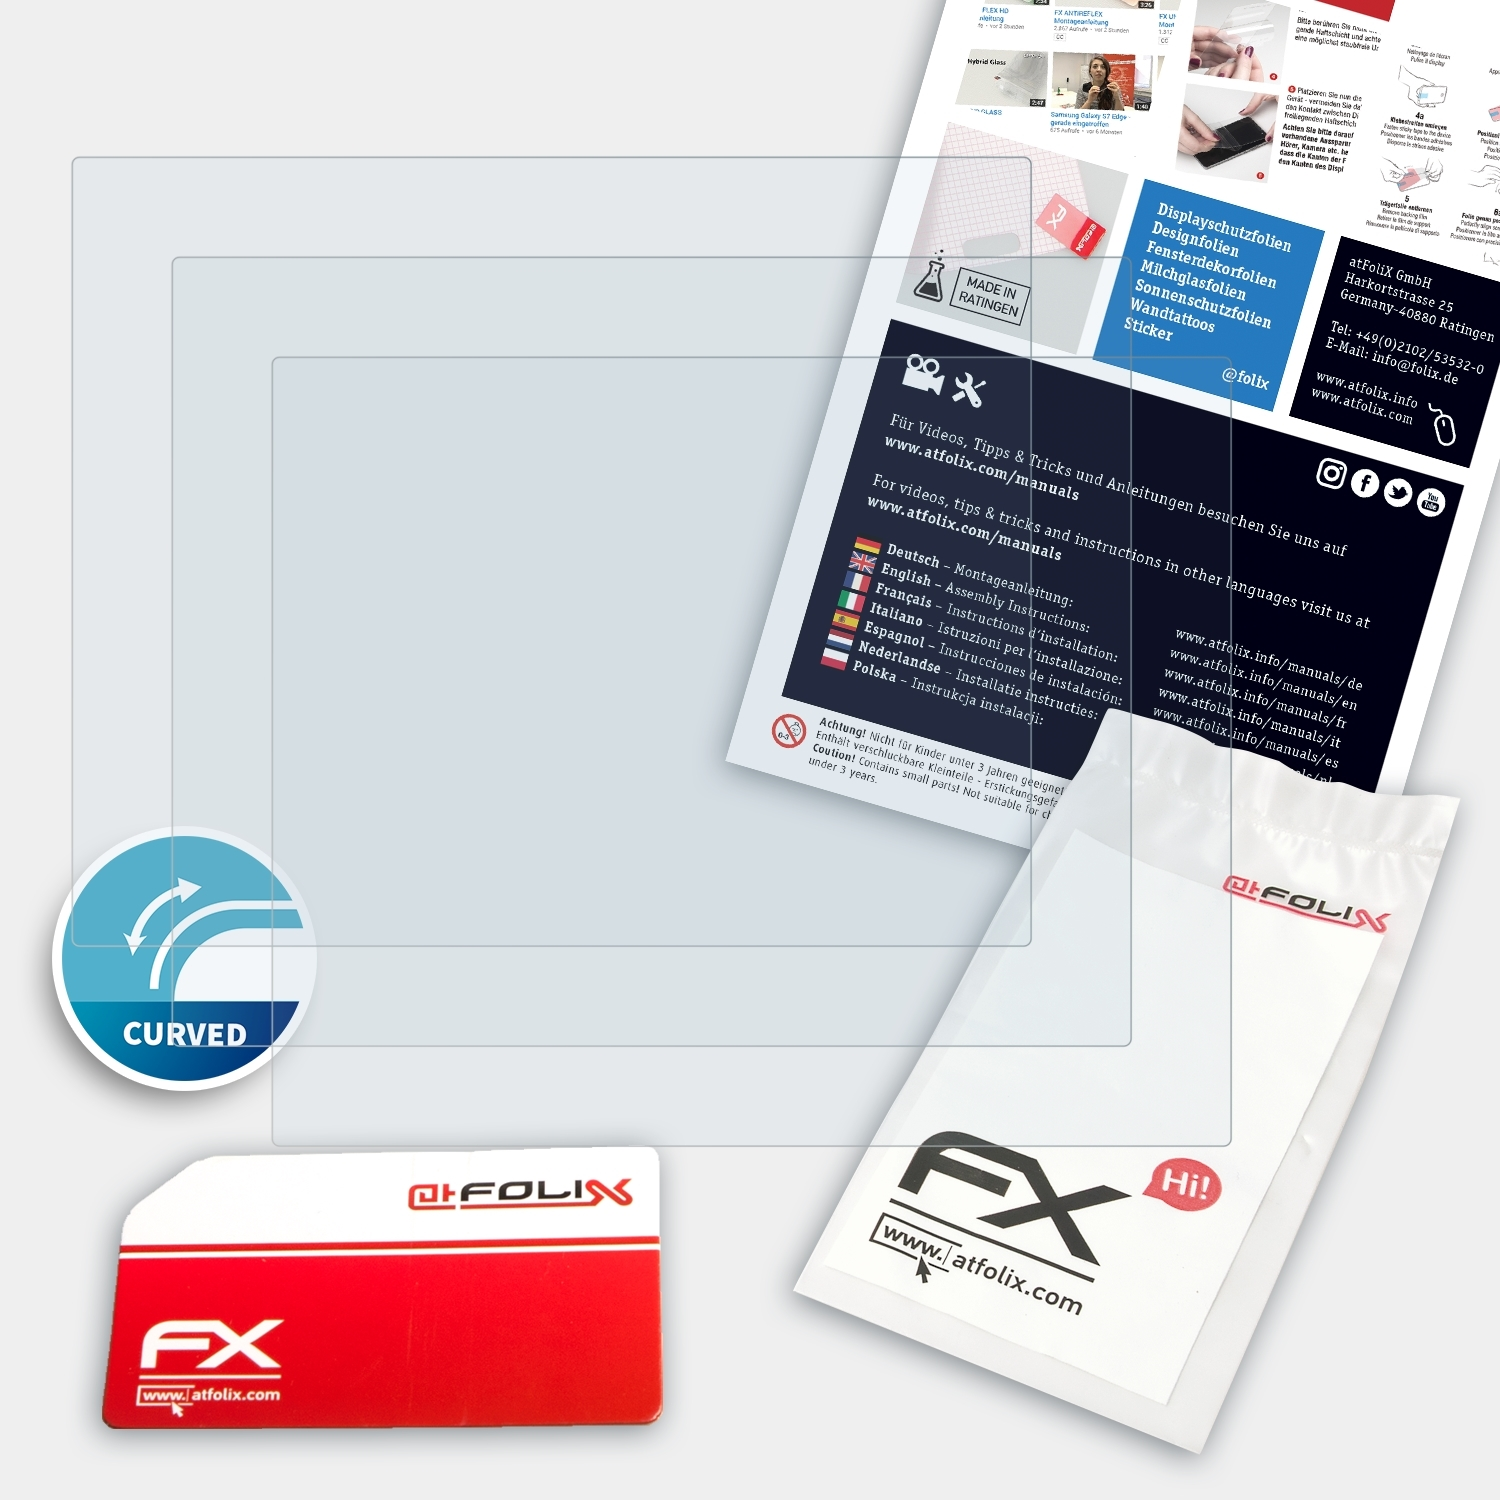 Plus) FX-ActiFleX Gigaset ATFOLIX Displayschutz(für E560A 3x